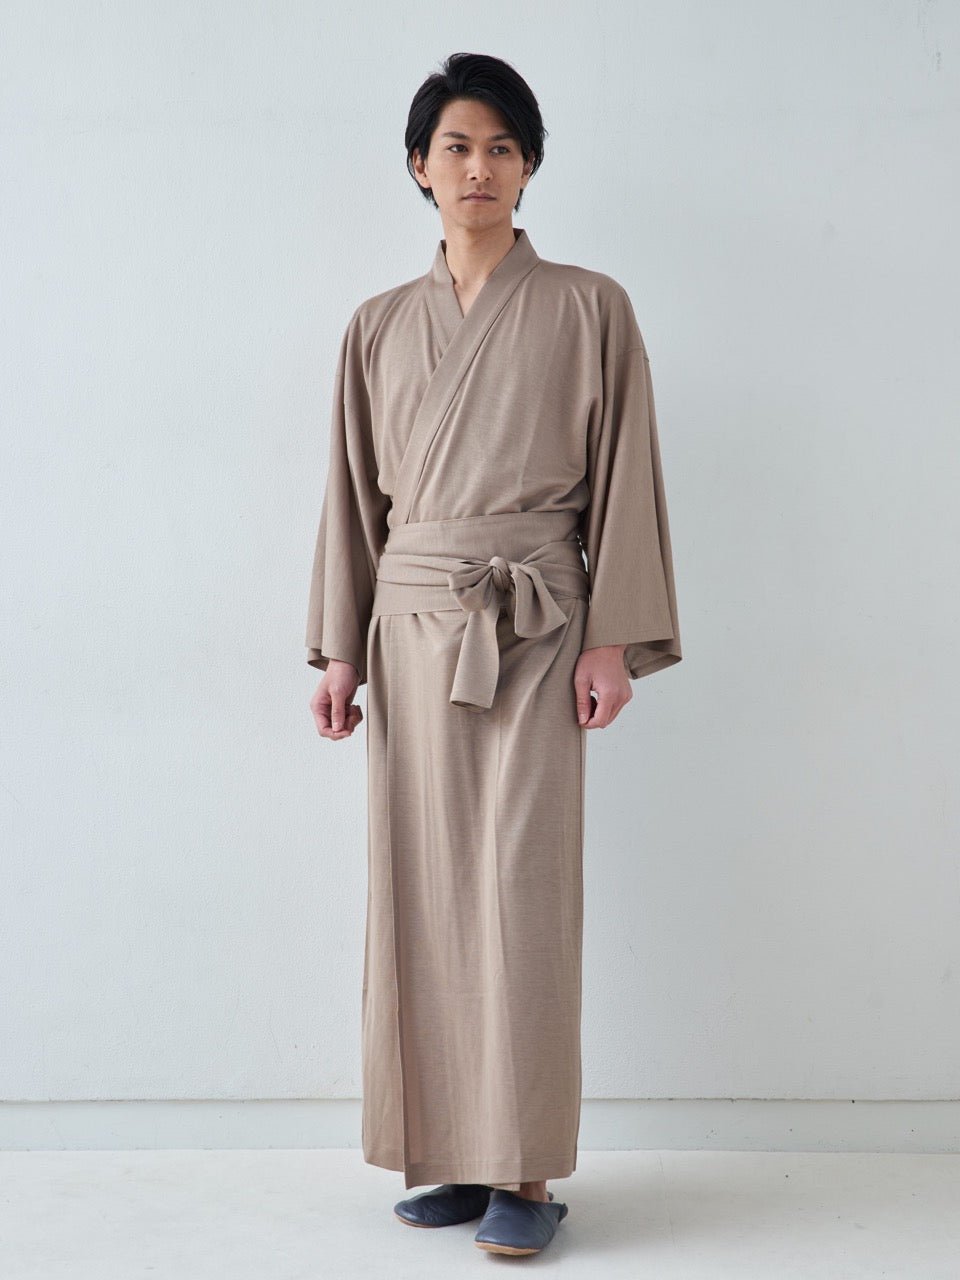 
                  
                    浴衣ルームウェア・プレミアム-グレー- Yukata Roomwear Premium-Grey- - Nanafu｜YUKATA Roomwear
                  
                